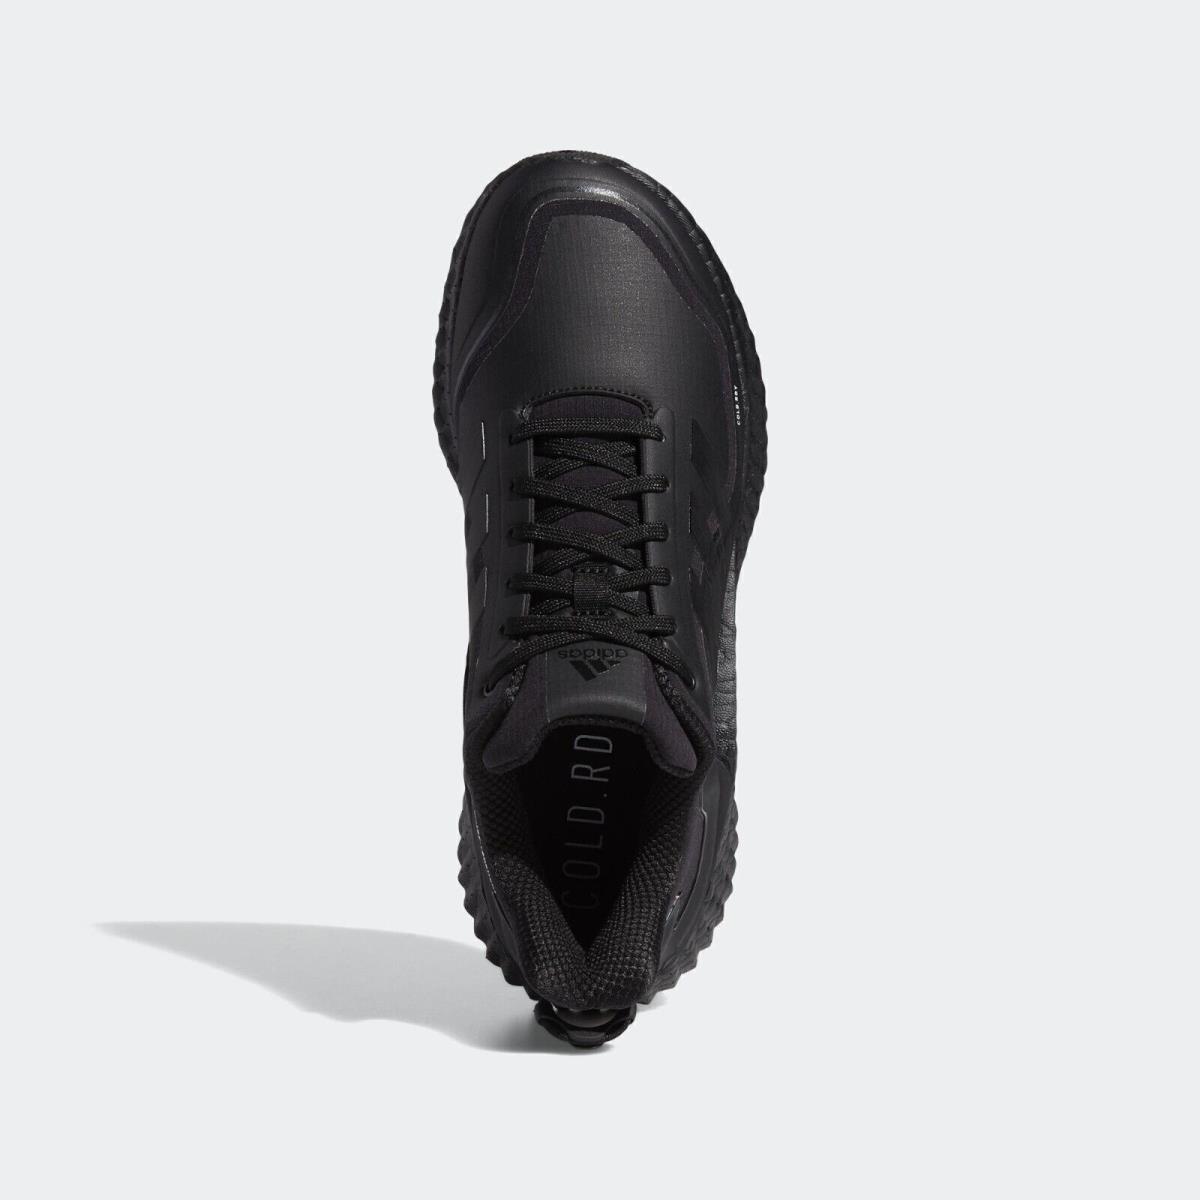 Adidas shoes Climawarm Ltd - Core Black 9